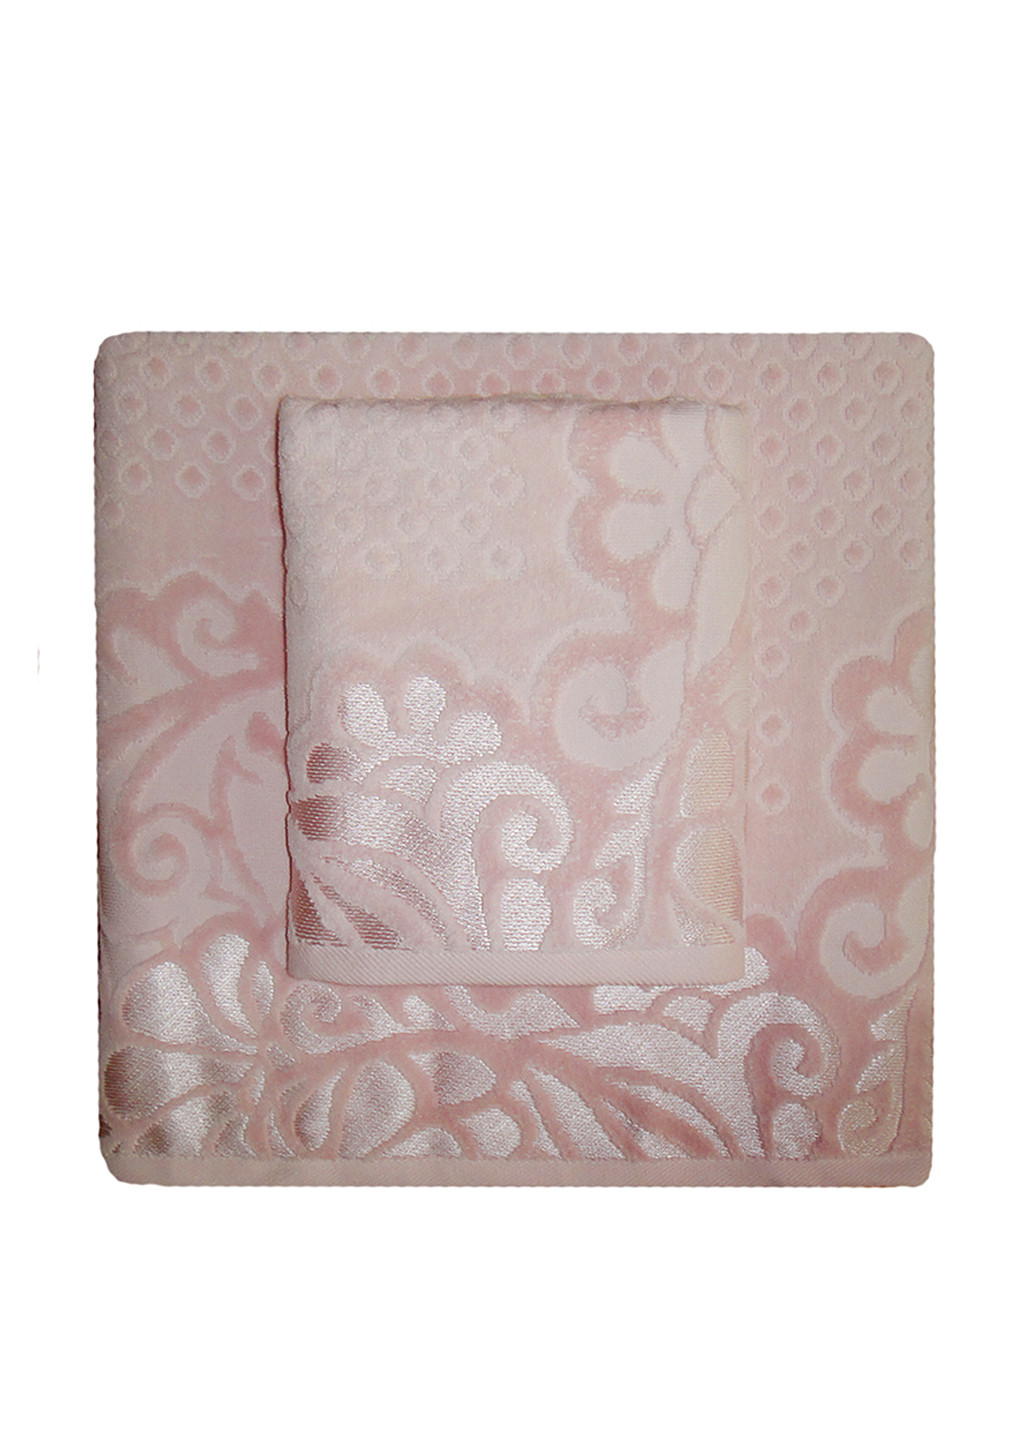 No Brand набор из двух полотенец (банное, лицевое), 50х90 см, 70х140 см рисунок светло-розовый производство - Турция